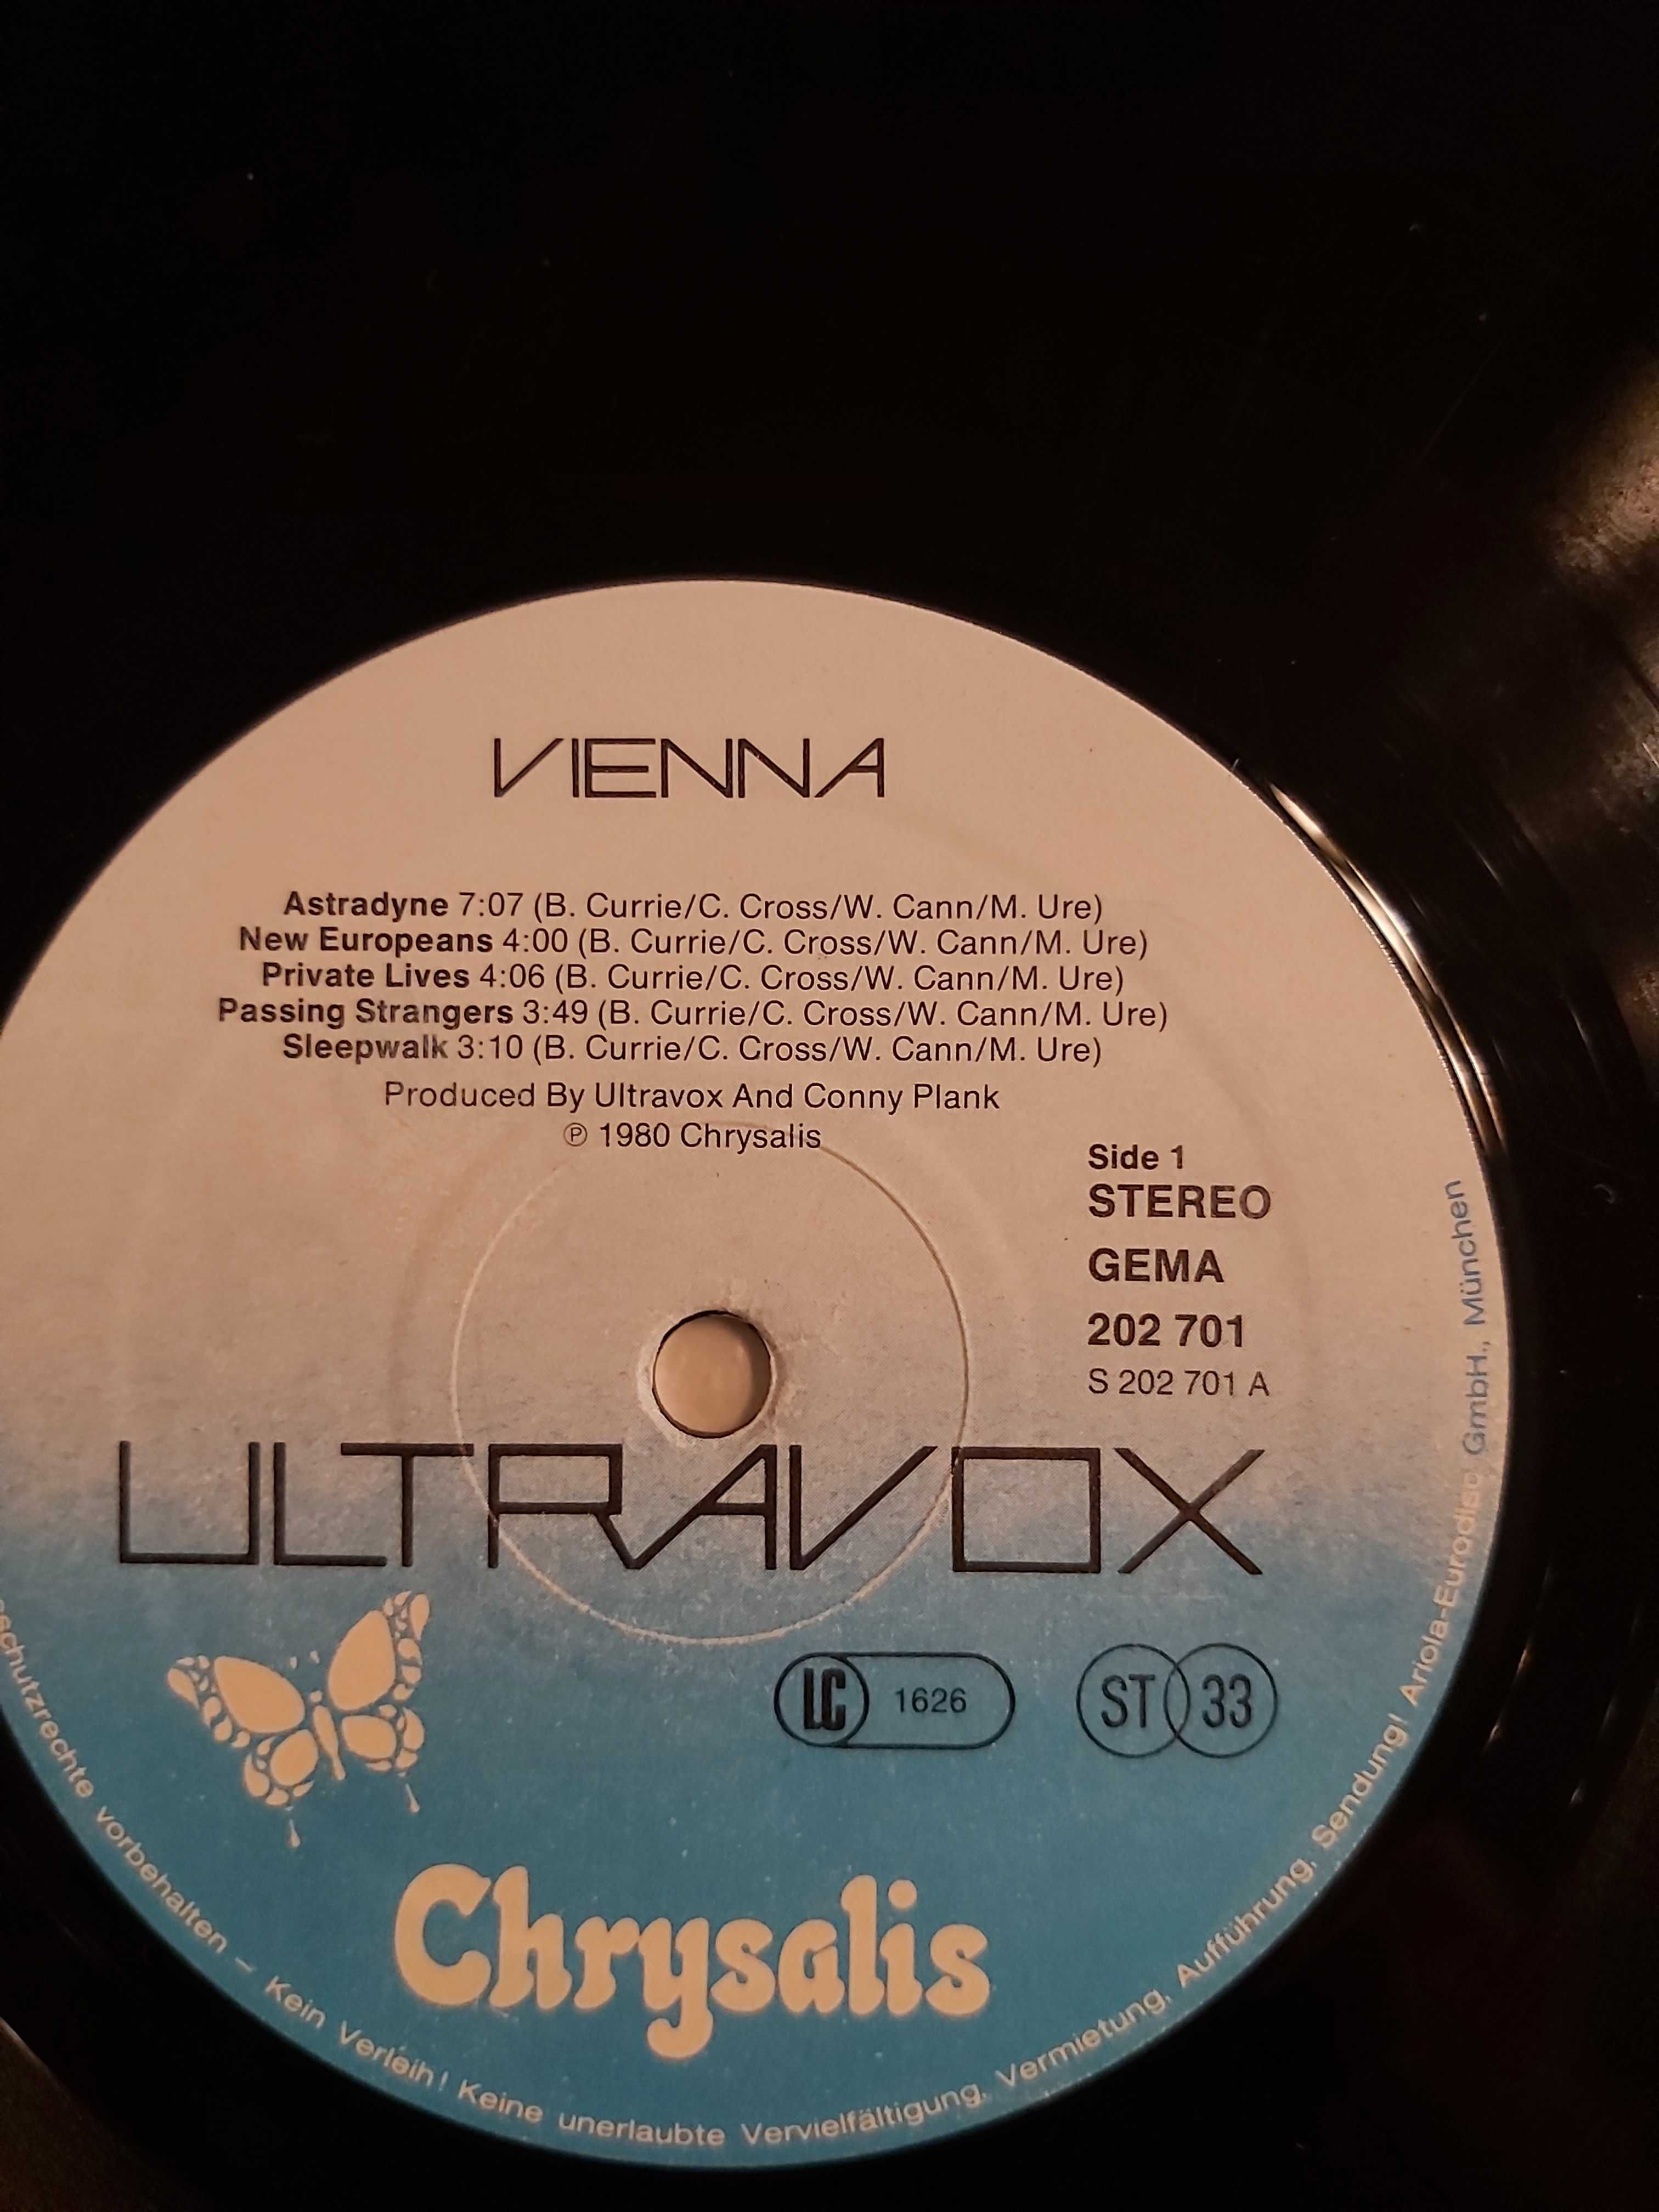 Płyta winylowa Ultravox "Vienna" 1-press z 1980 roku, cena 79 zł